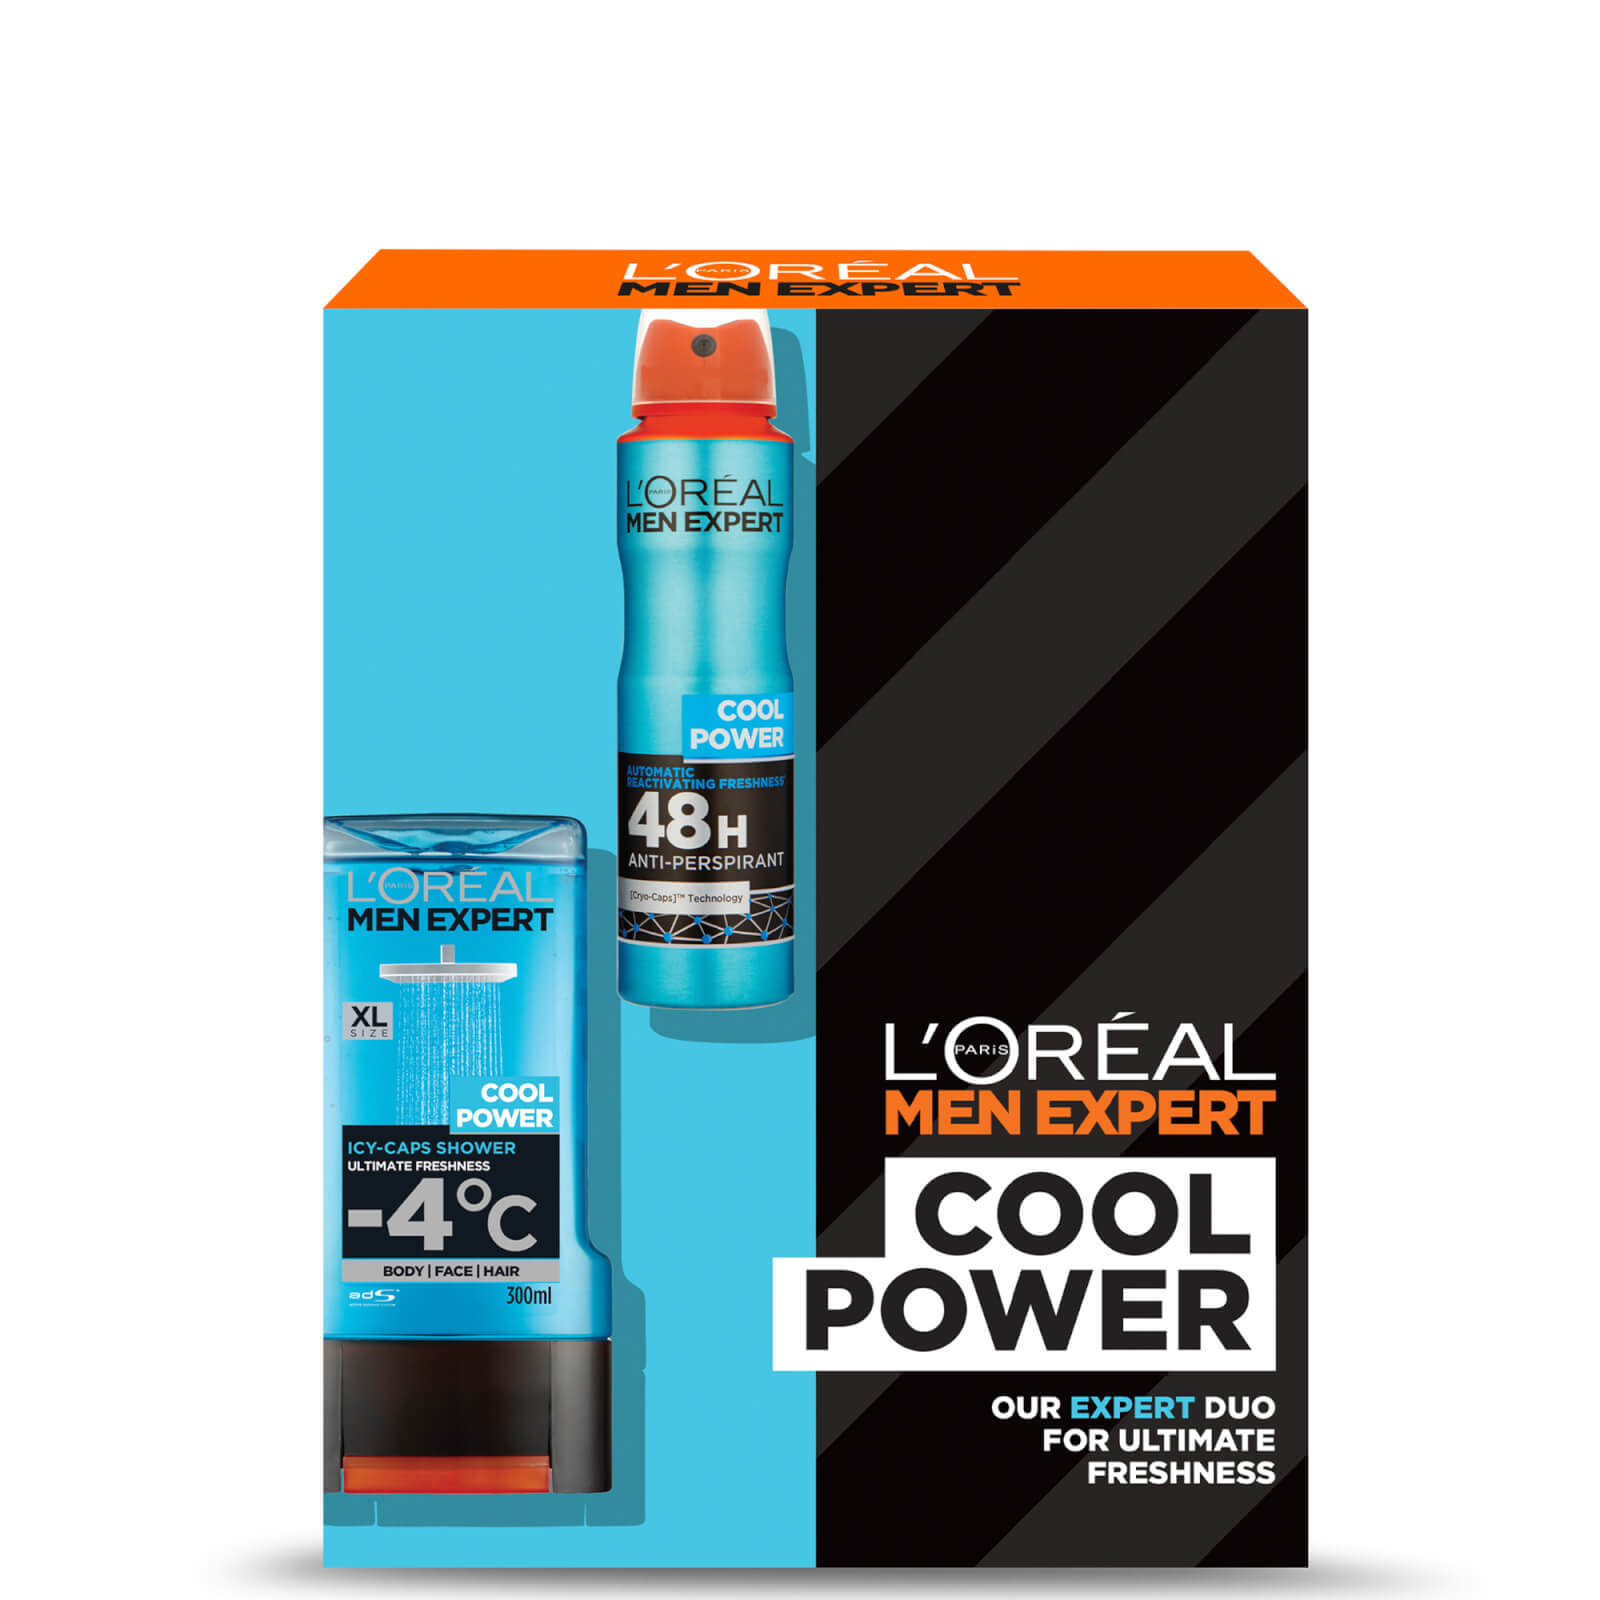 L'Oréal Paris Men Expert Cool Power Gift Set